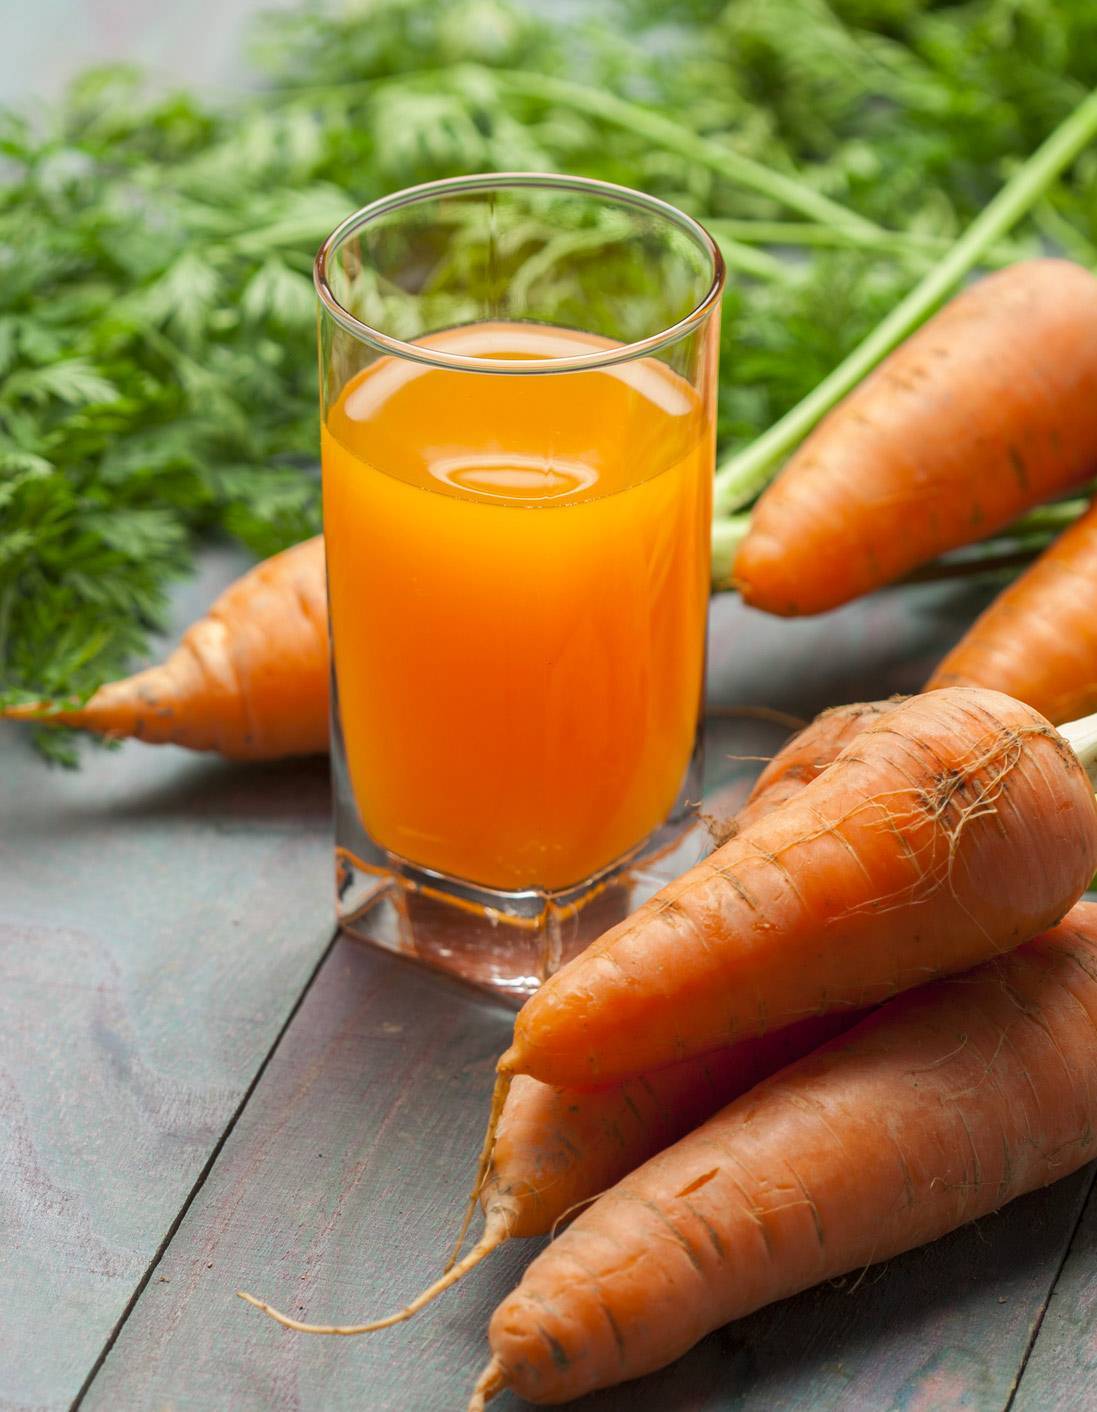 Морковь при похудении, польза при борьбе с лишним весом, рецепты | irksportmol.ru